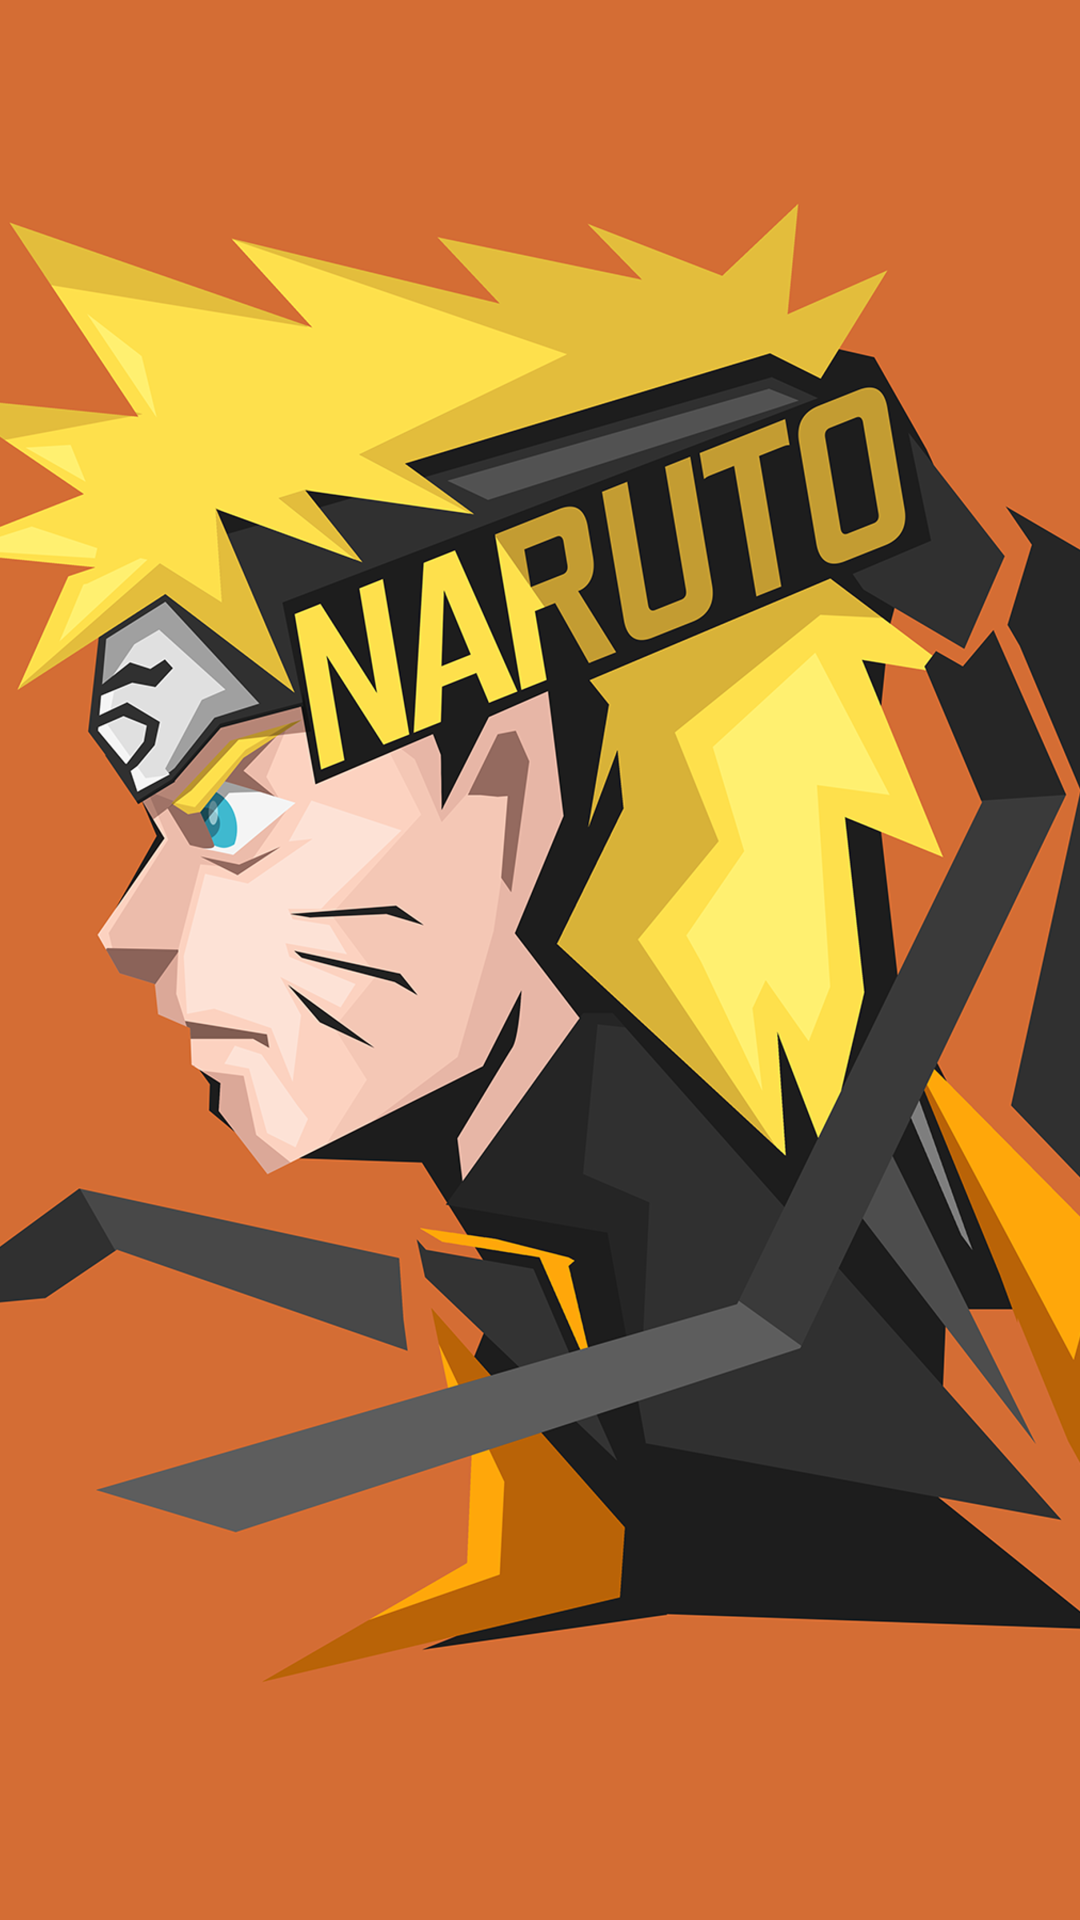 Naruto Uzumaki hình nền điện thoại: Naruto Uzumaki - một trong những nhân vật anime nổi tiếng nhất. Hãy giữ anh ta ngay trên màn hình điện thoại của bạn với hình nền siêu đẹp và siêu sắc nét này. Tận hưởng một khoảnh khắc anime đầy phấn khích và vui tươi.